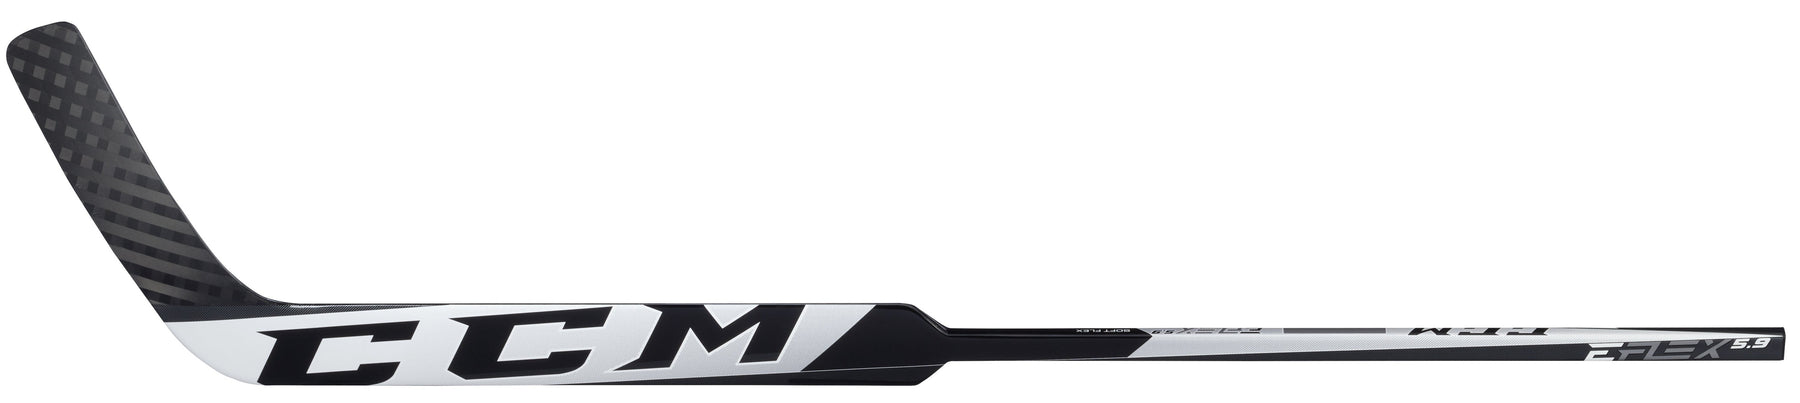 CCM EFLEX 5.9 Intermediate Goalie Stick (White/Black)